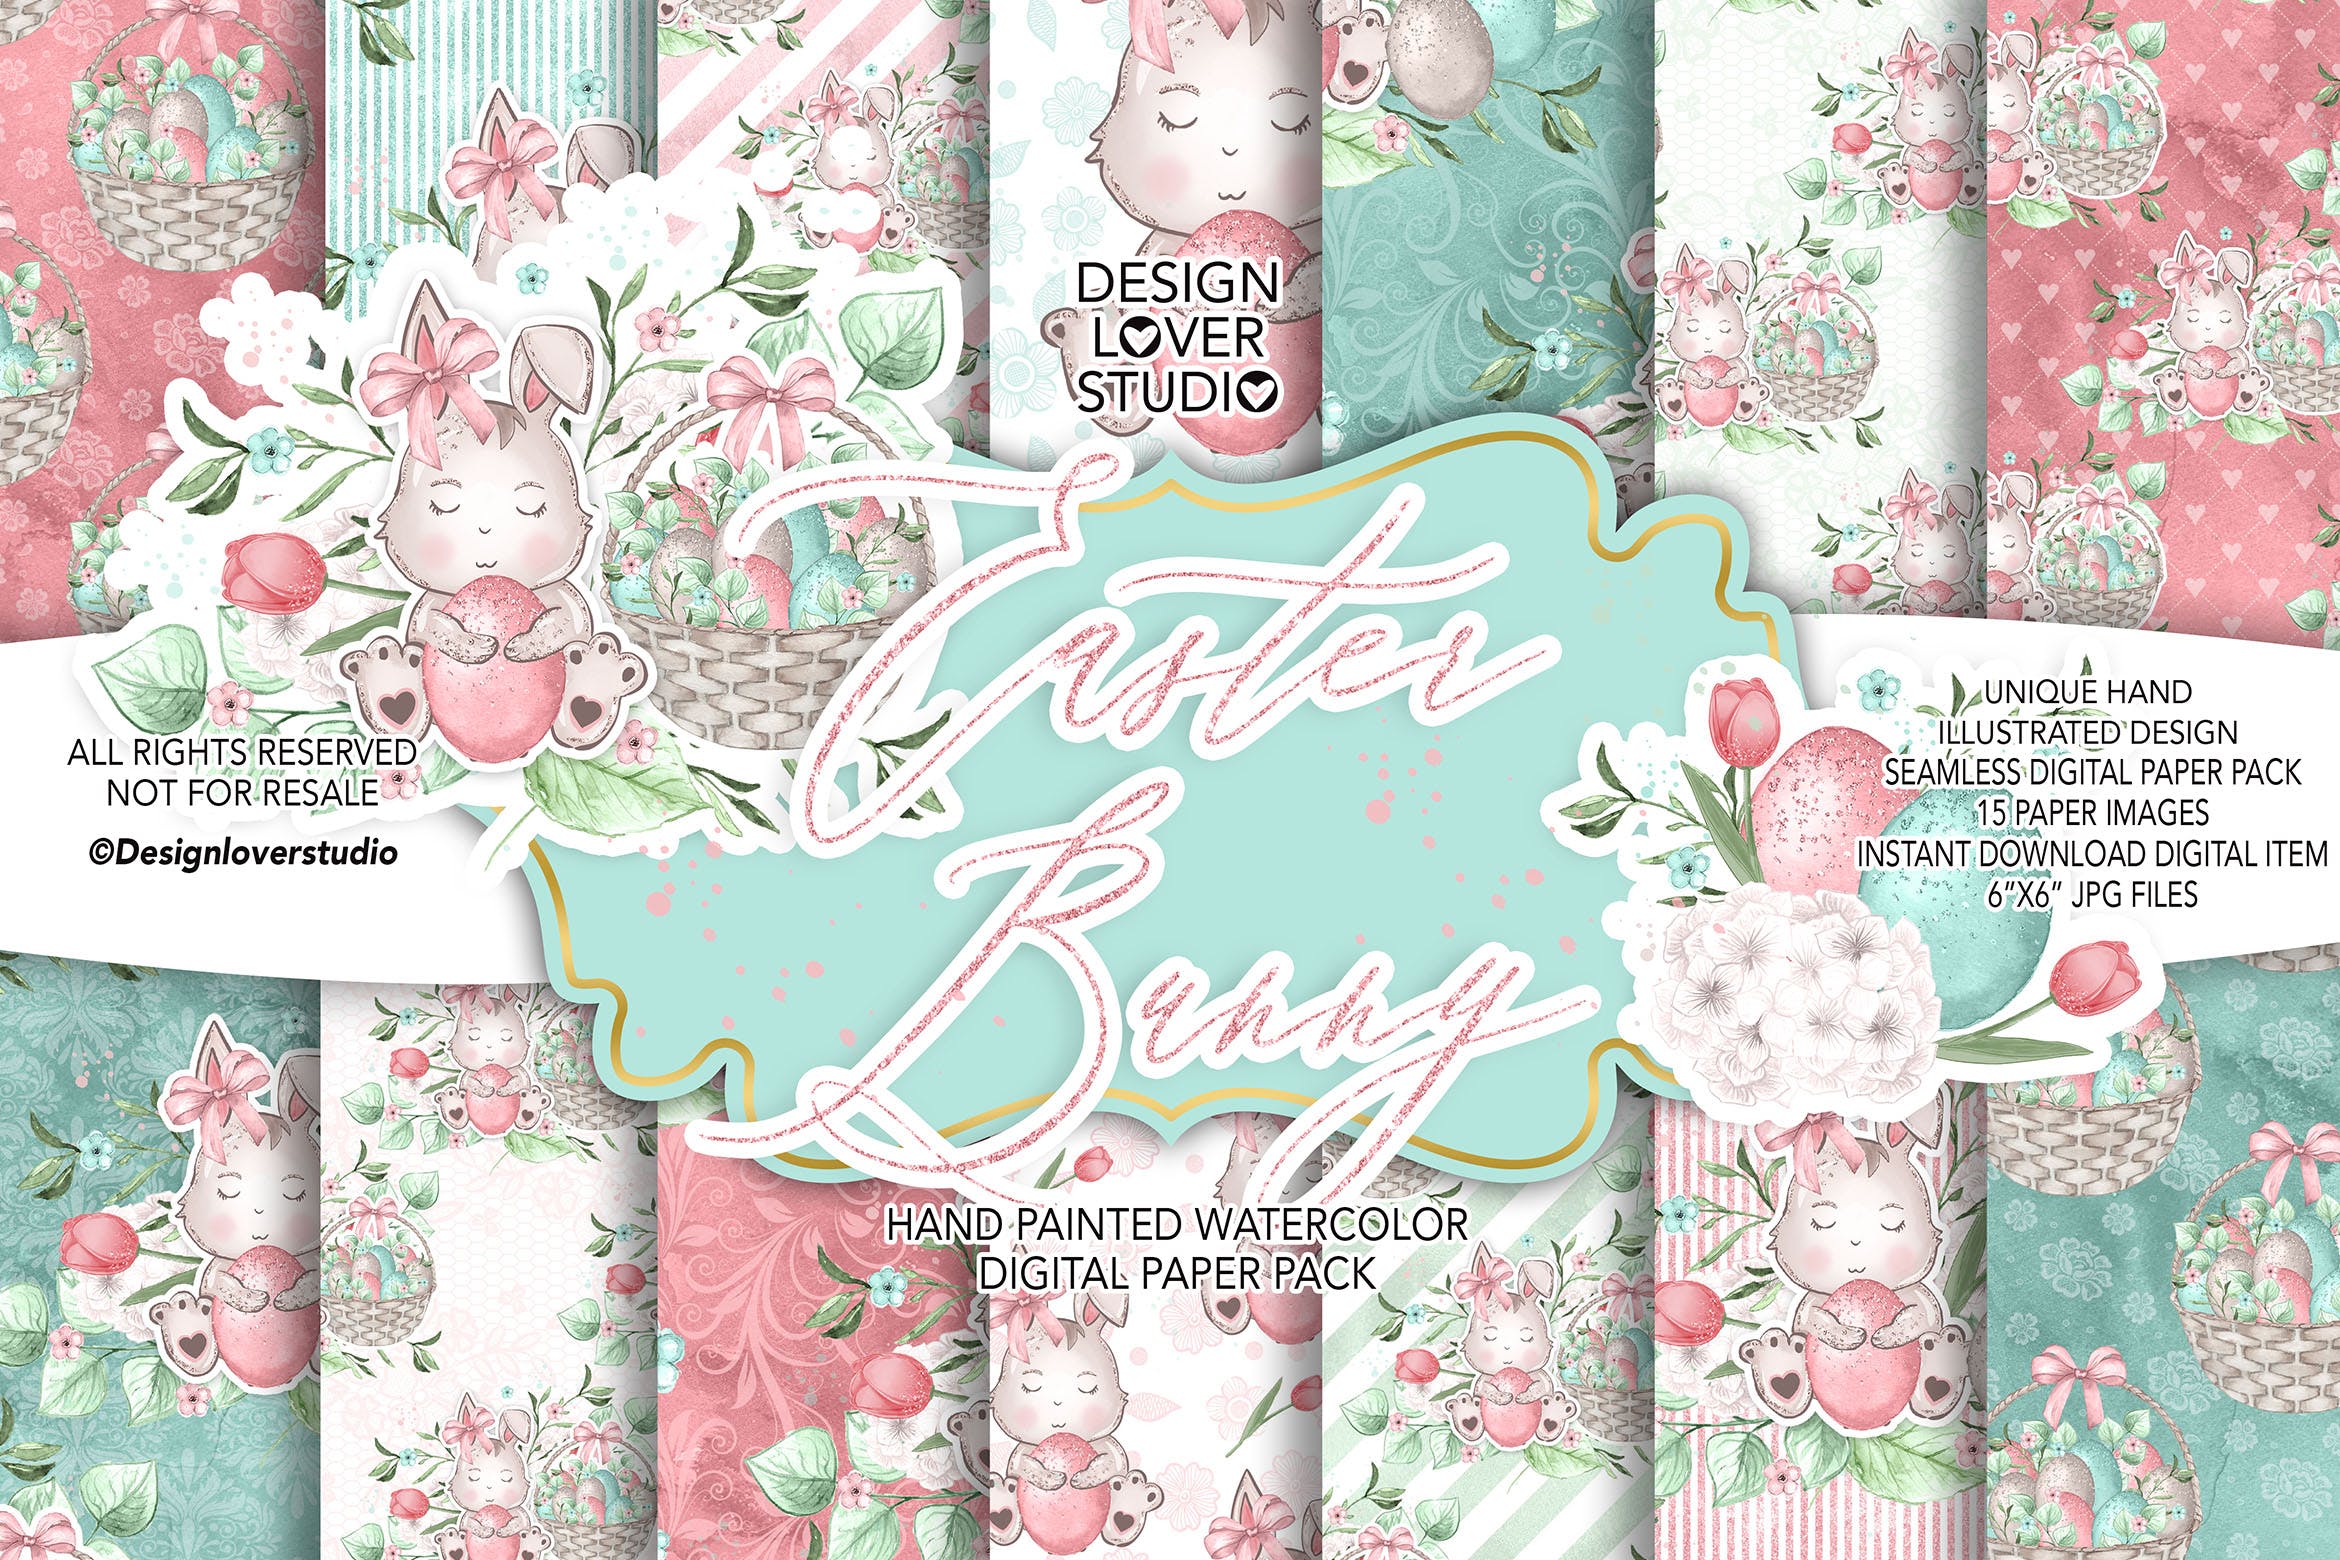 甜蜜风格复活节兔子手绘图案数码纸背景素材 Sweet Easter Bunny digital paper pack插图